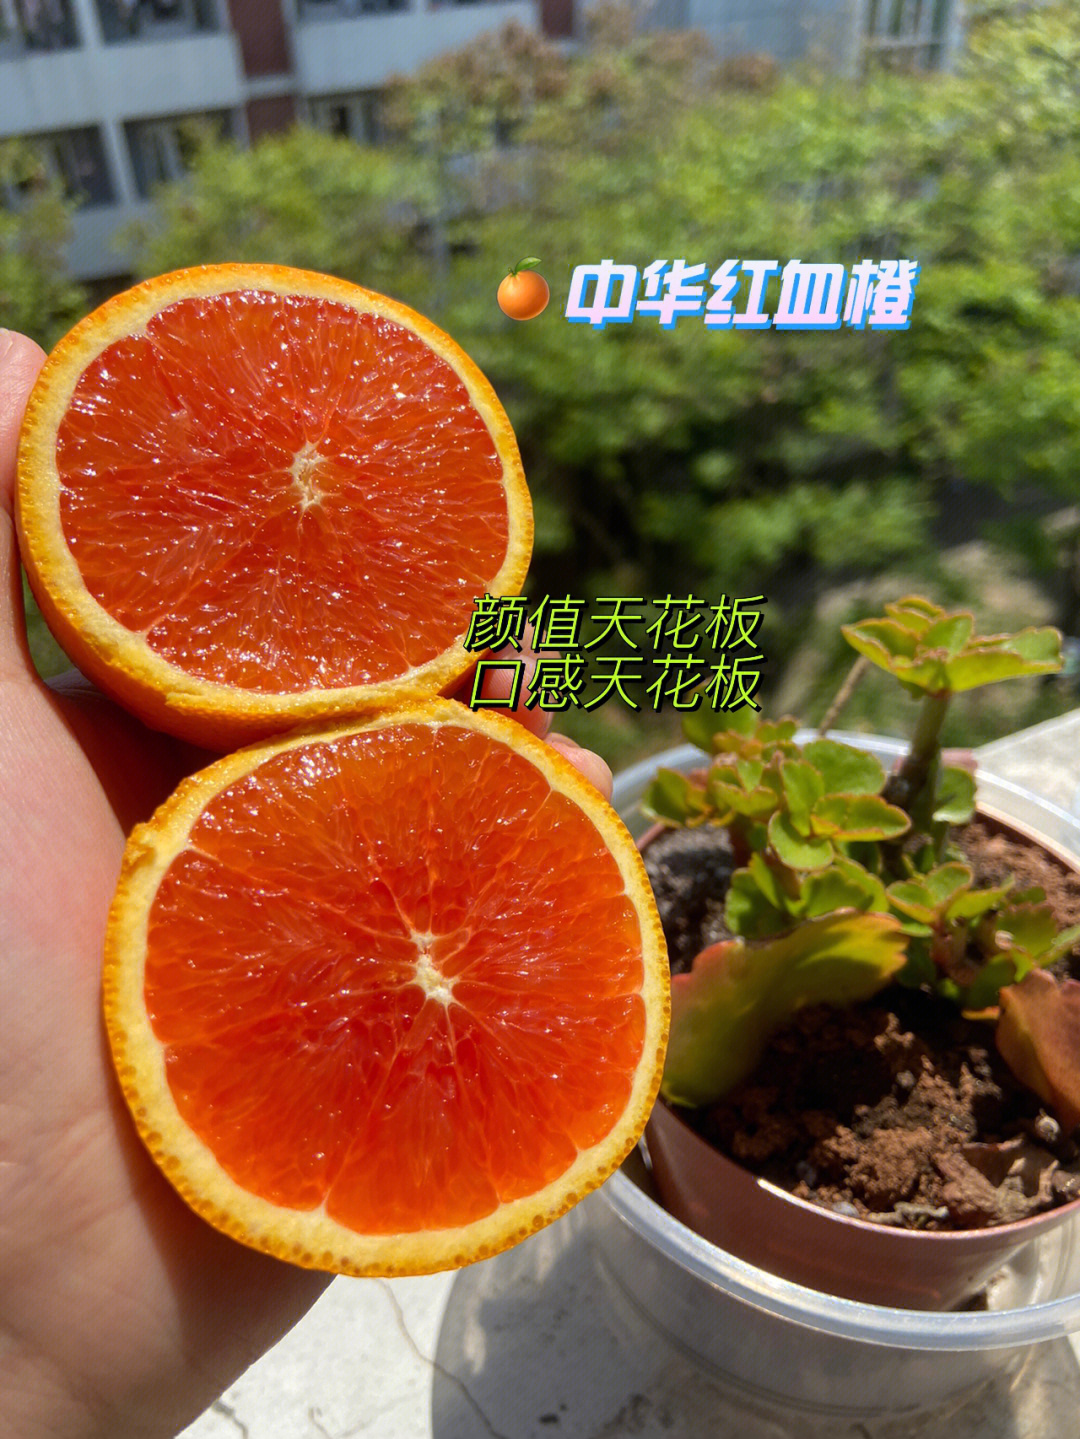 前三张图:中华红血橙颜值与实力并存!第一次吃,被整个惊艳!